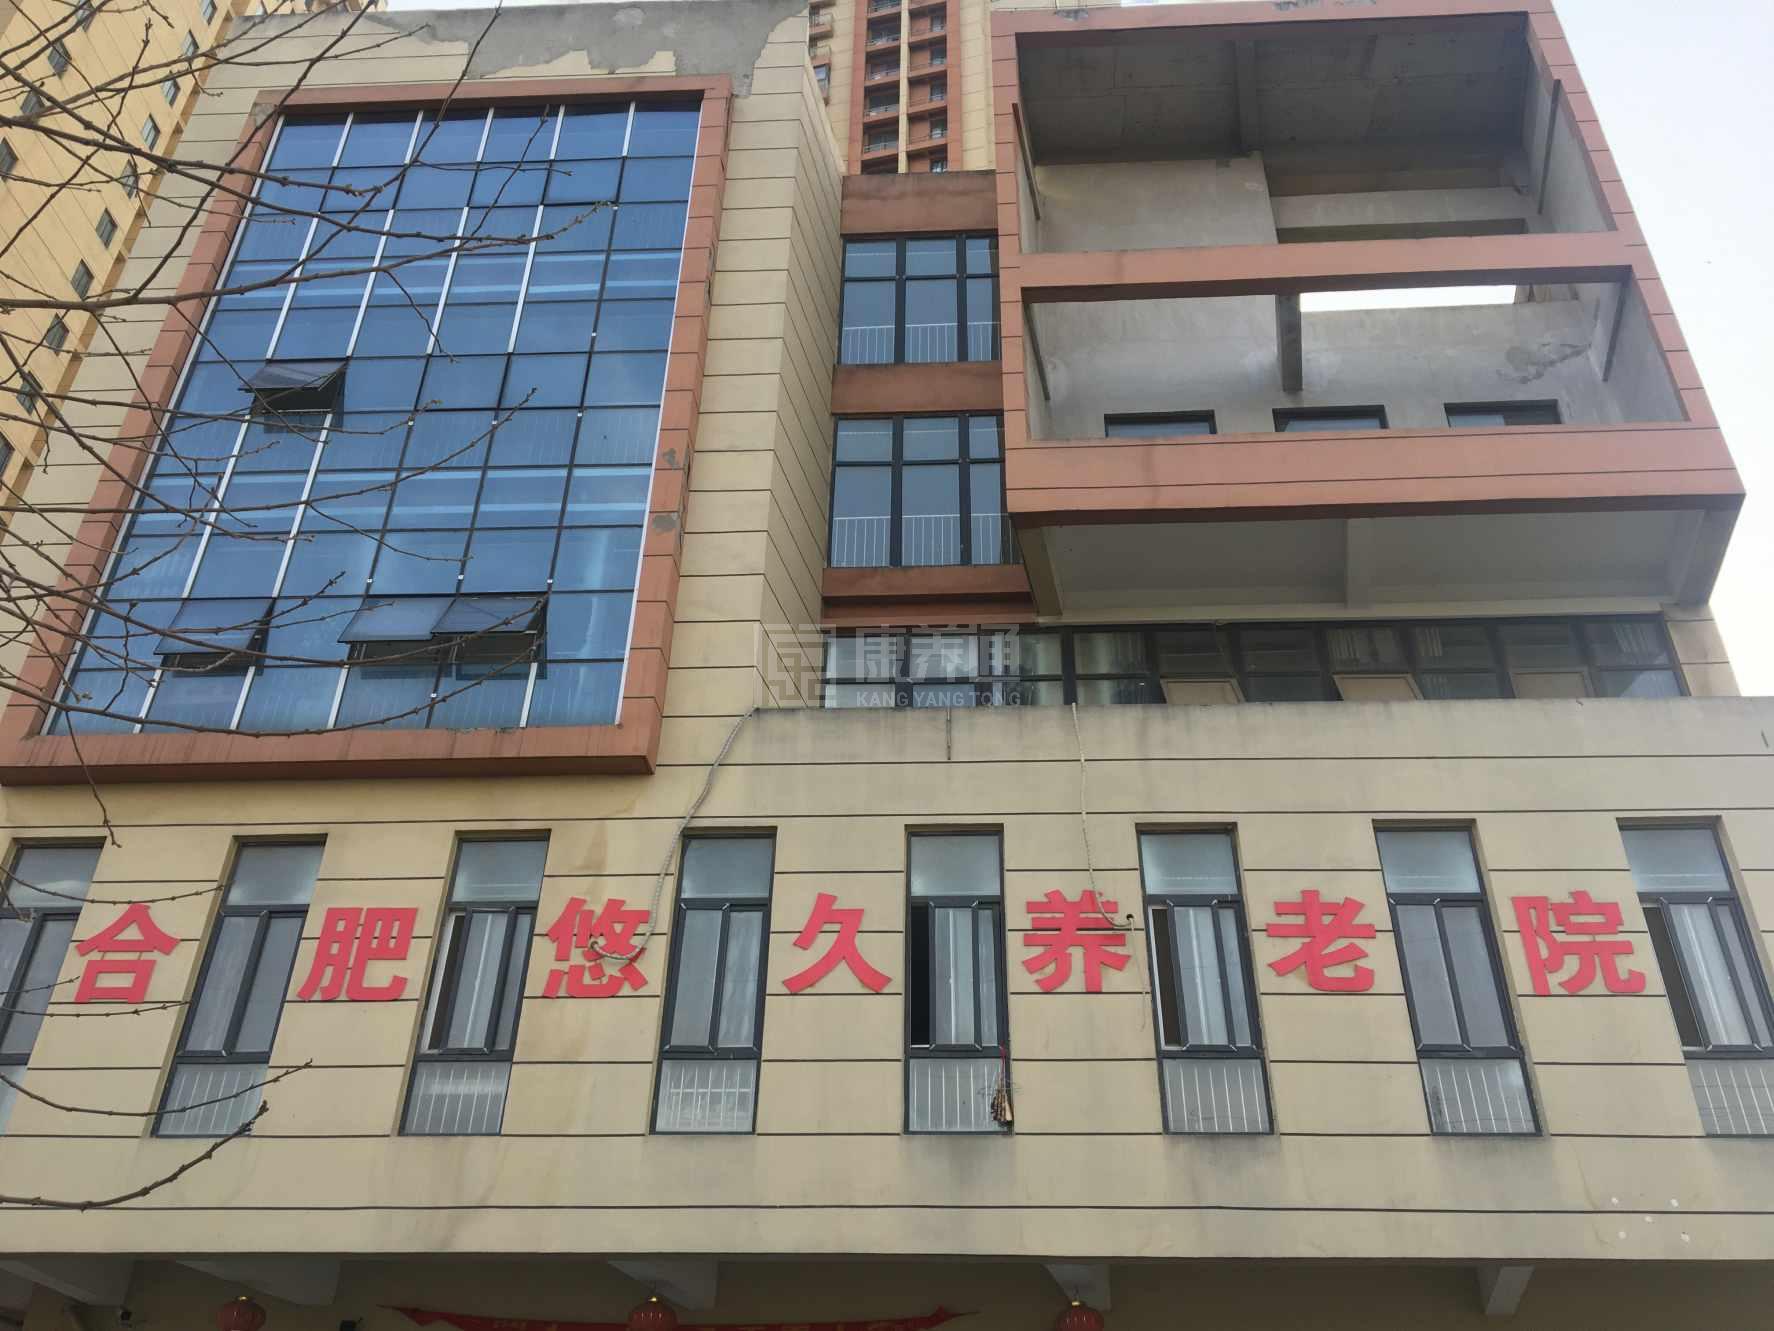 安徽省鑫悠久老年服务有限公司环境图-阳台